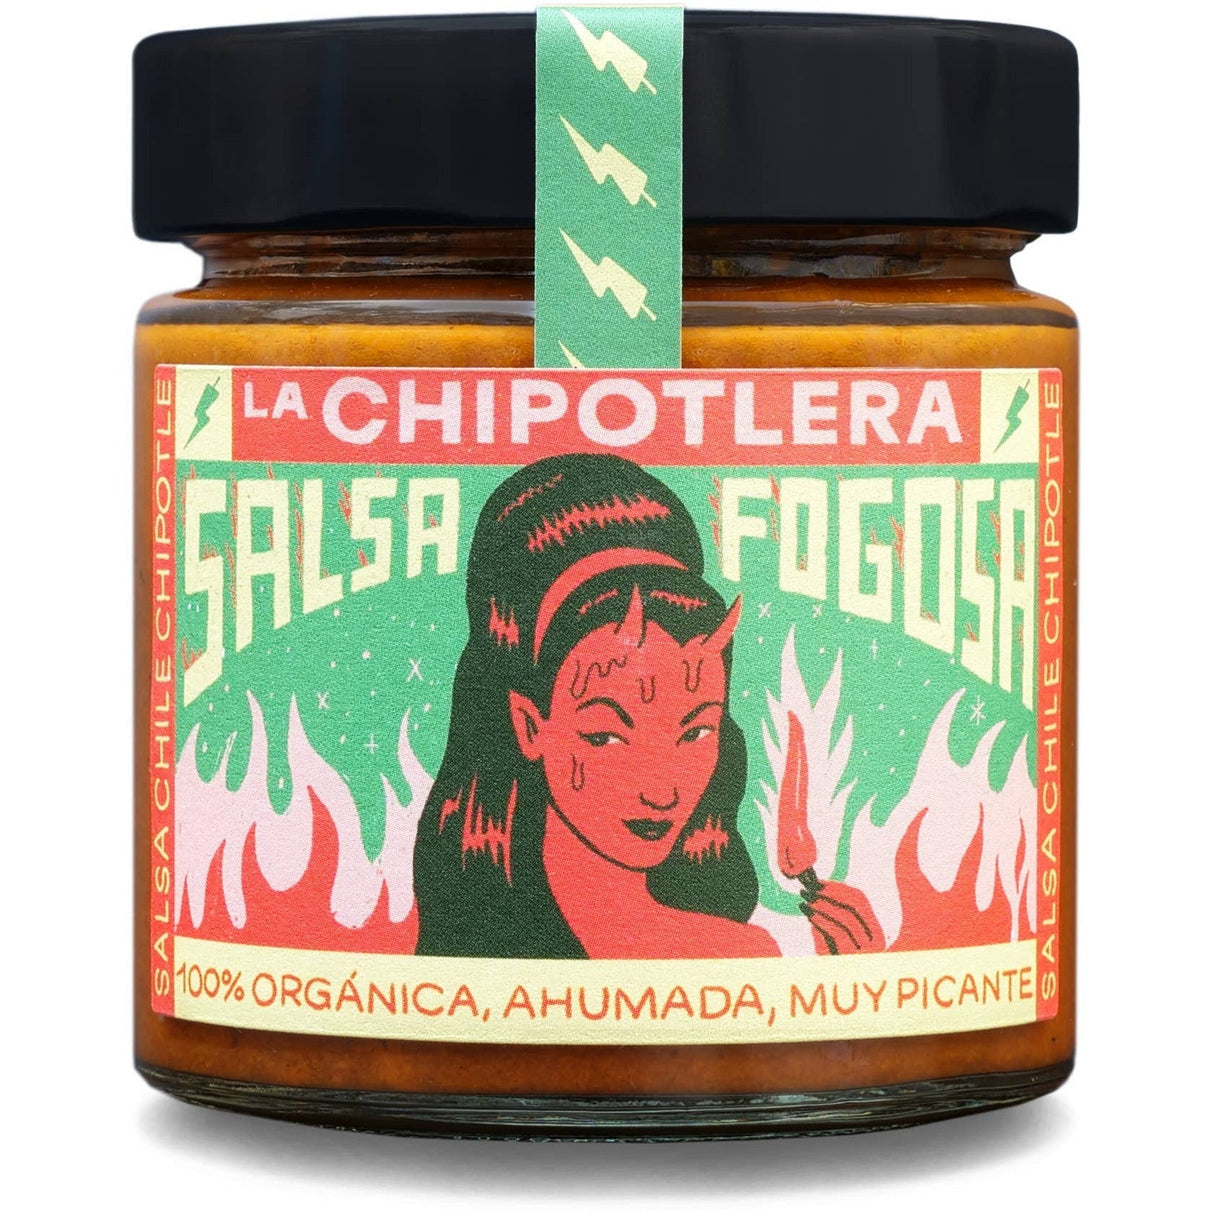 LA CHIPOTLERA - Salsa Fogosa - Very Spicy Chipotle Chilli Sauce